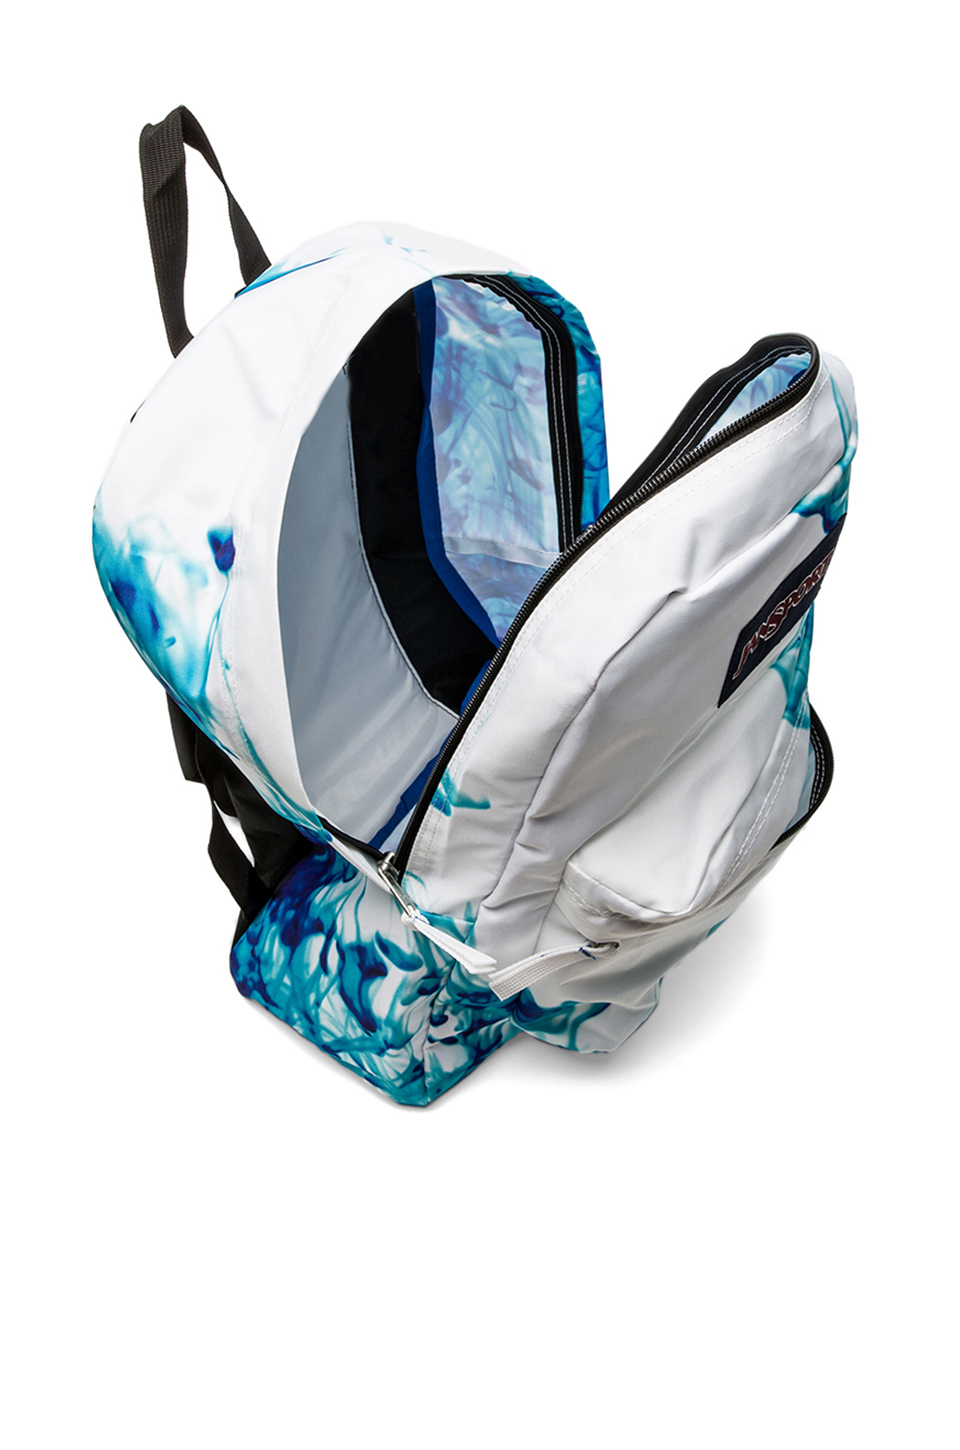 Jansport Superbreak Backpack in Blue | Lyst